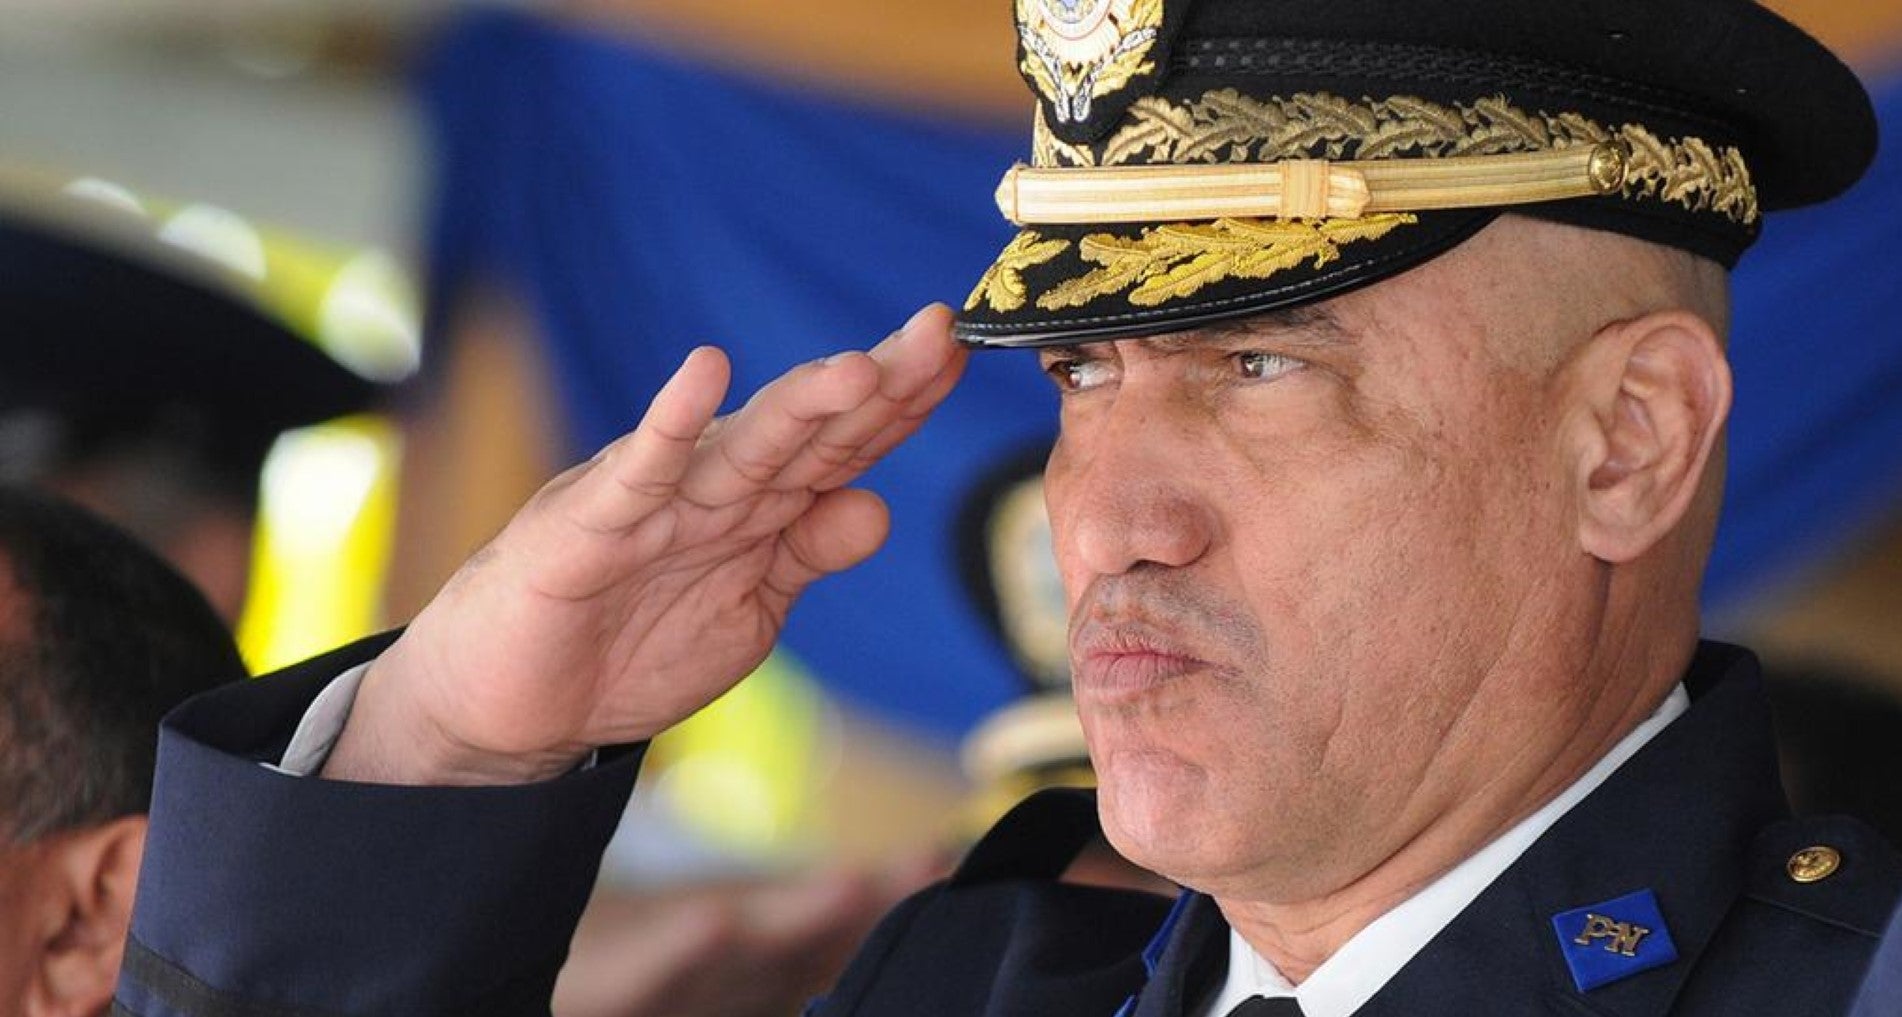 Al exdirector de la Policía Nocional, Juan Bonilla se le imputa el cargo de participar en la importación de sustancias controladas a los Estados Unidos 